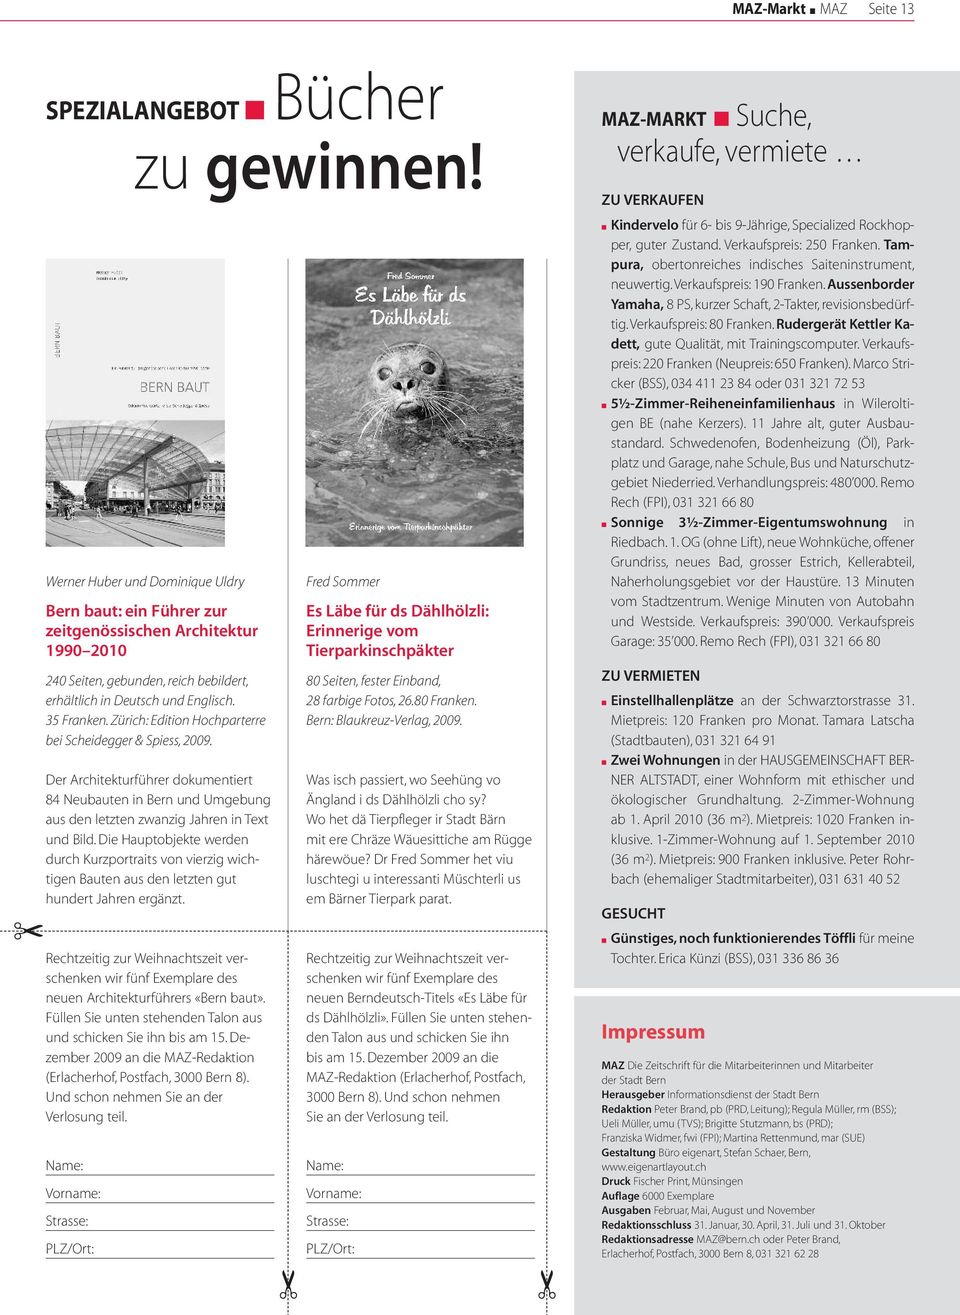 Zürich: Edition Hochparterre bei Scheidegger & Spiess, 2009. Der Architekturführer dokumentiert 84 Neubauten in Bern und Umgebung aus den letzten zwanzig Jahren in Text und Bild.